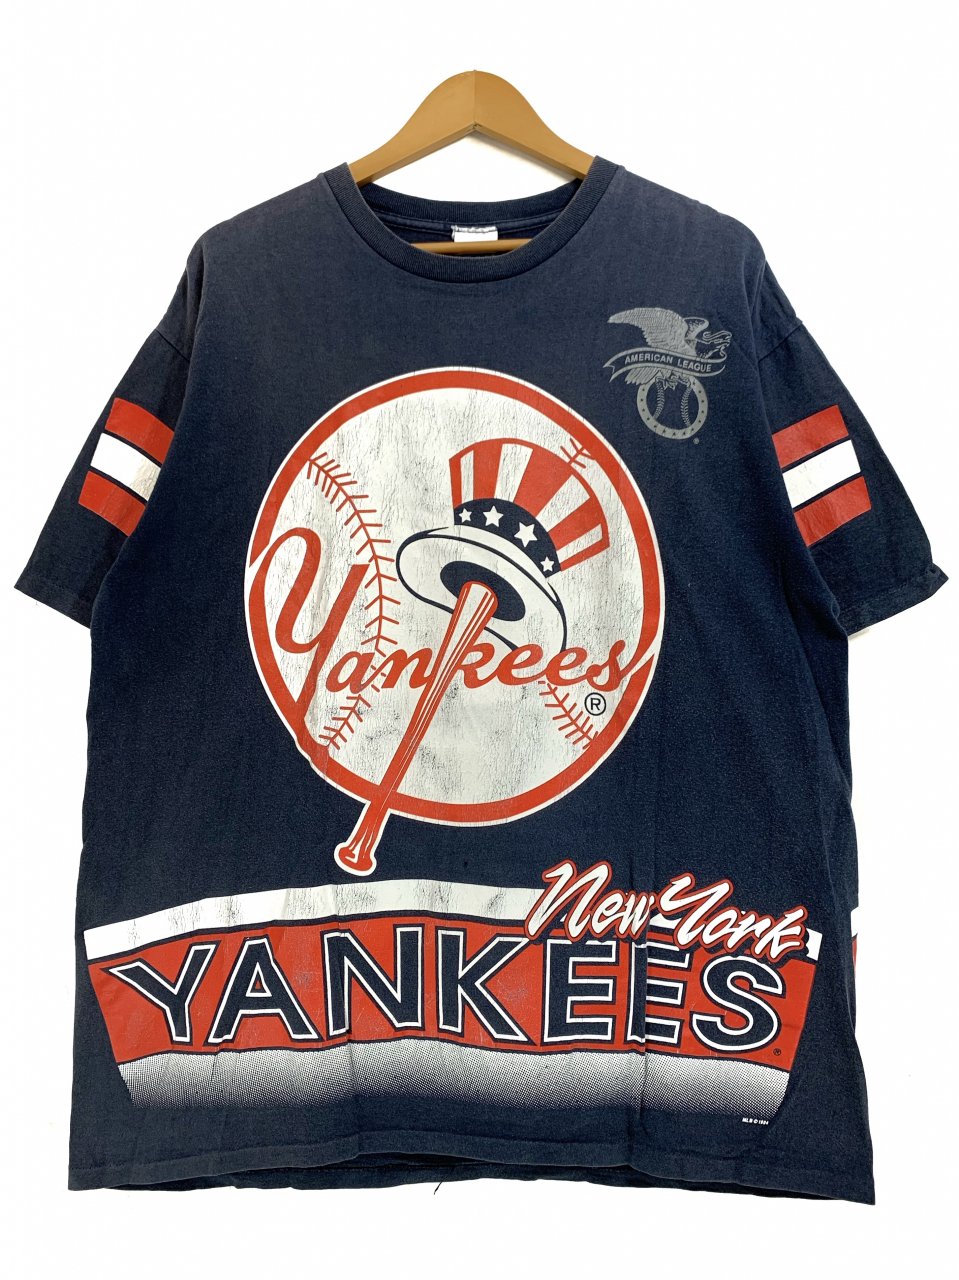 Yankees ニューヨークヤンキース オーバーサイズ プリントtシャツ ロゴ